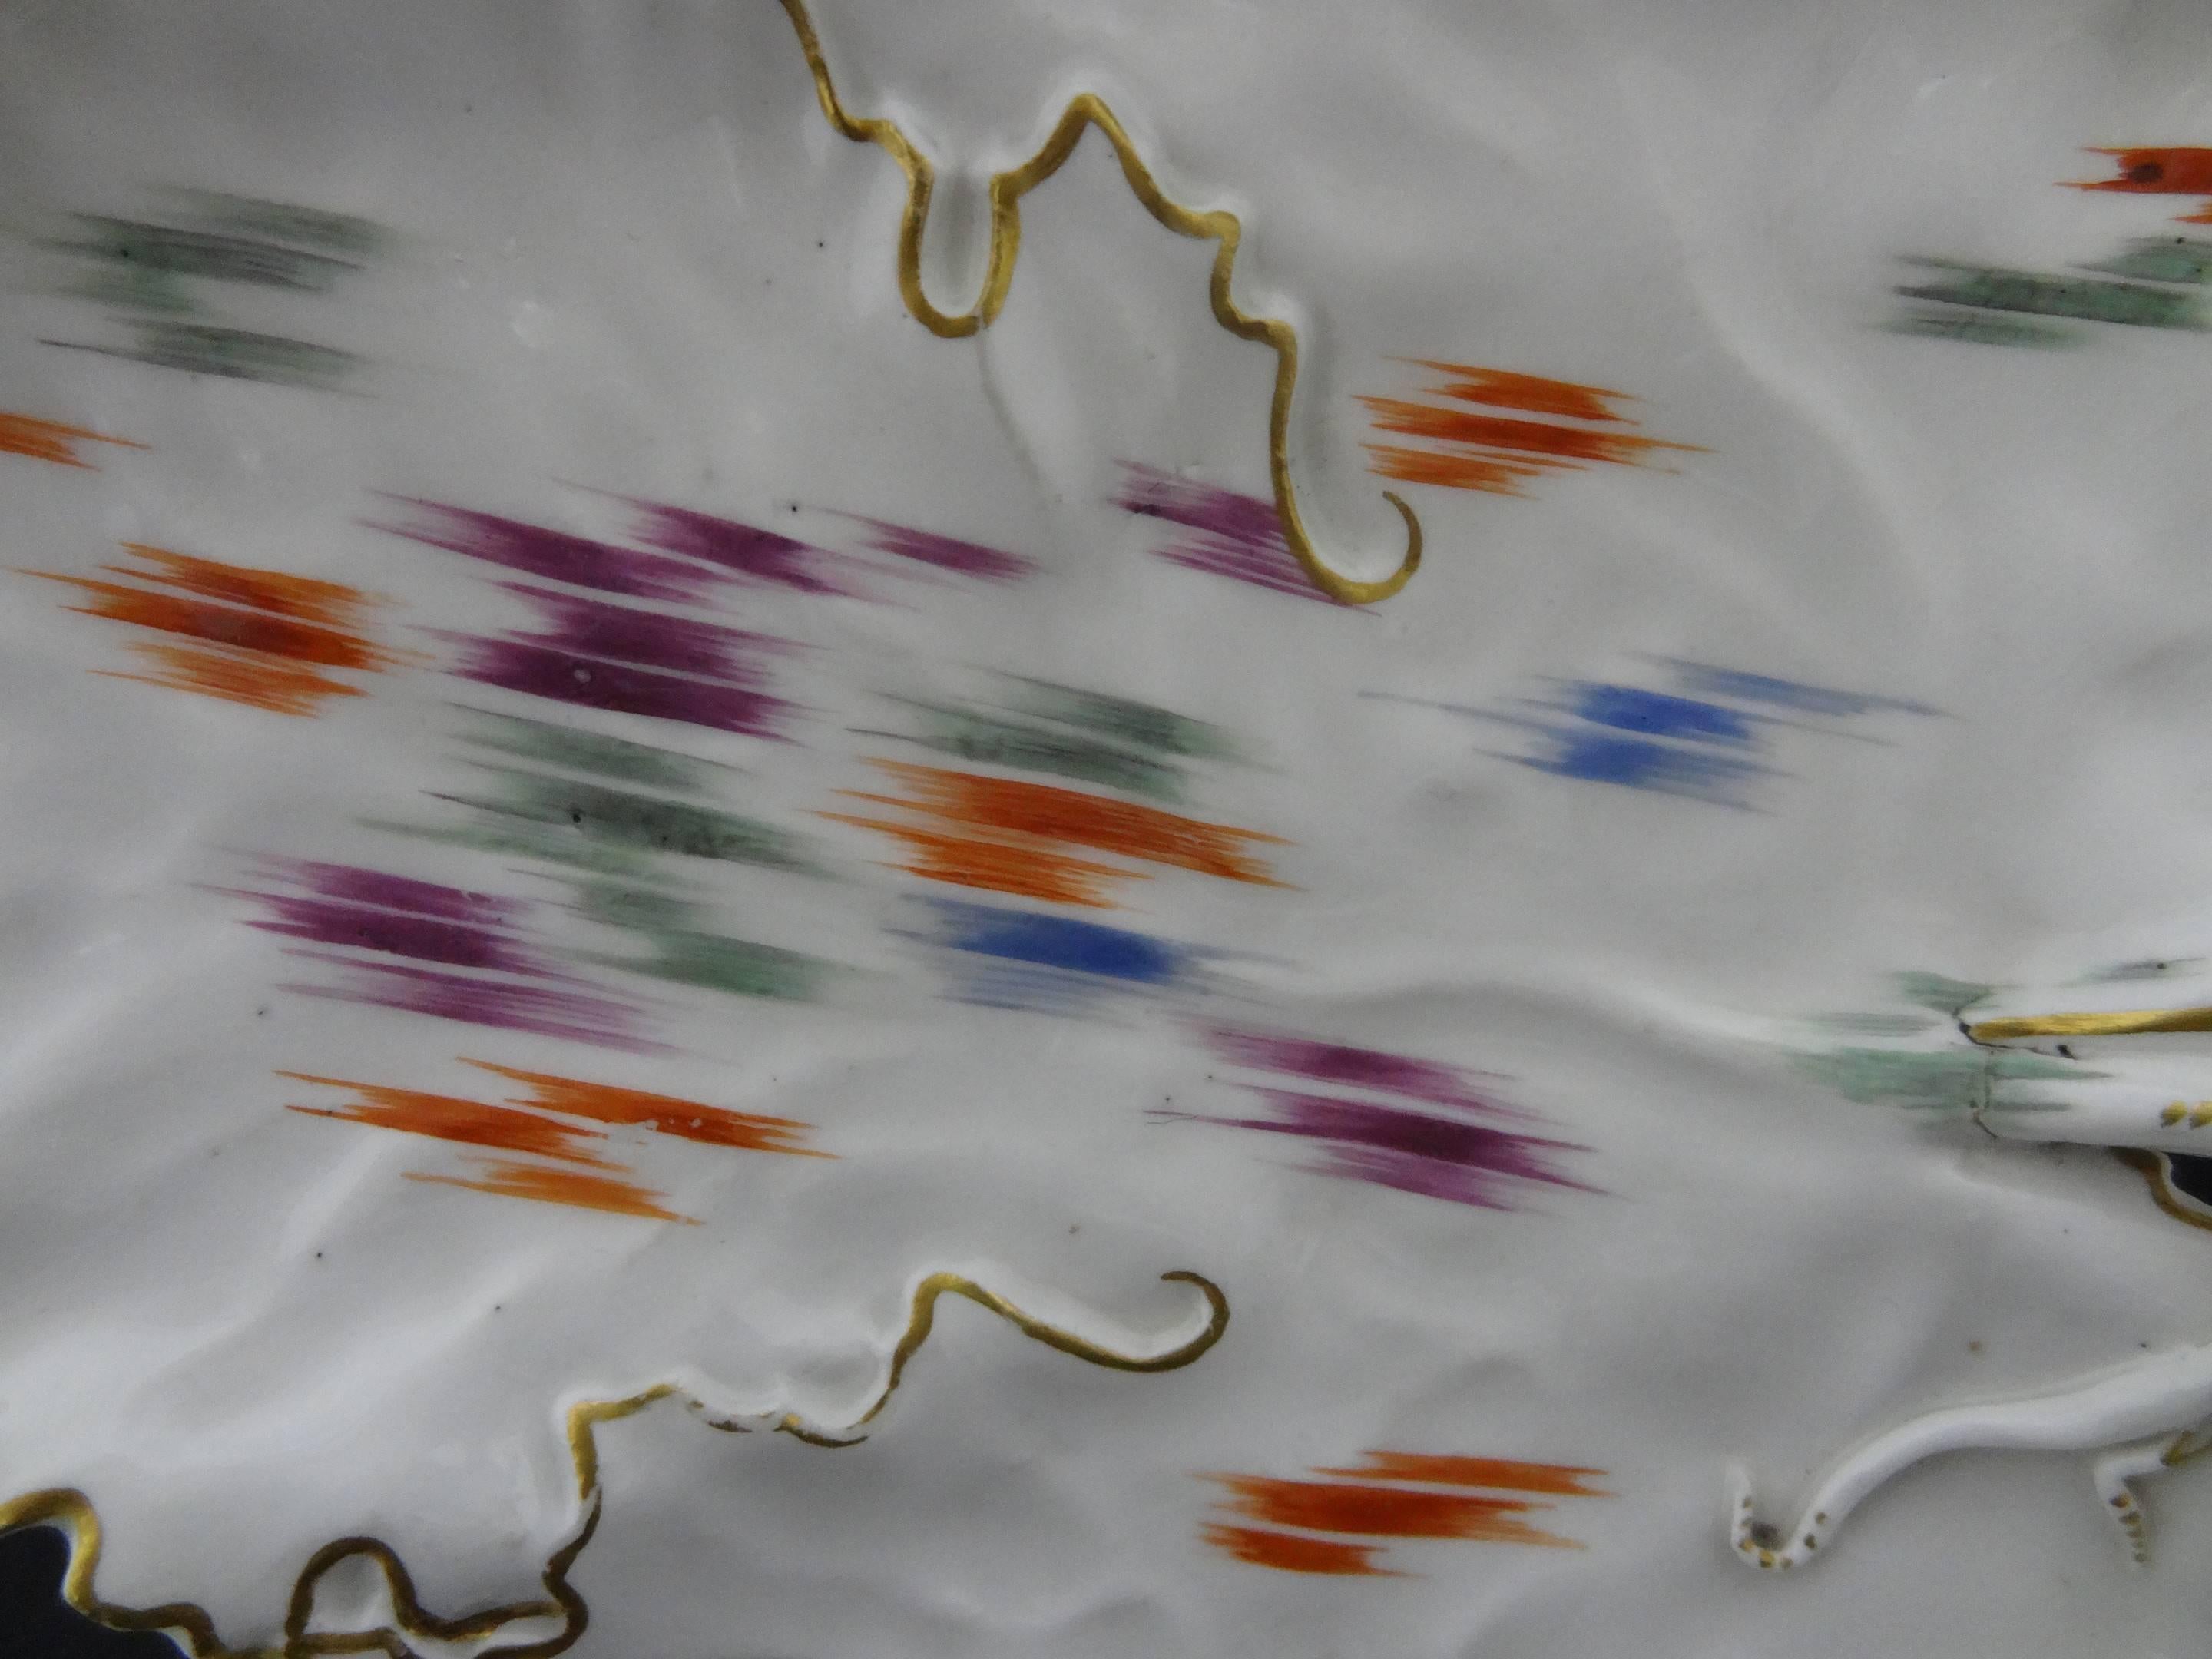 Plat à feuilles en porcelaine de Frankenthal, décoré en vert, orange, bleu et violet de courtes bandes hachurées dans des bordures de lignes dorées, couronné du monogramme CT et de 76 en bleu sous glaçure, 22 cm de long.

Ce style inhabituel de